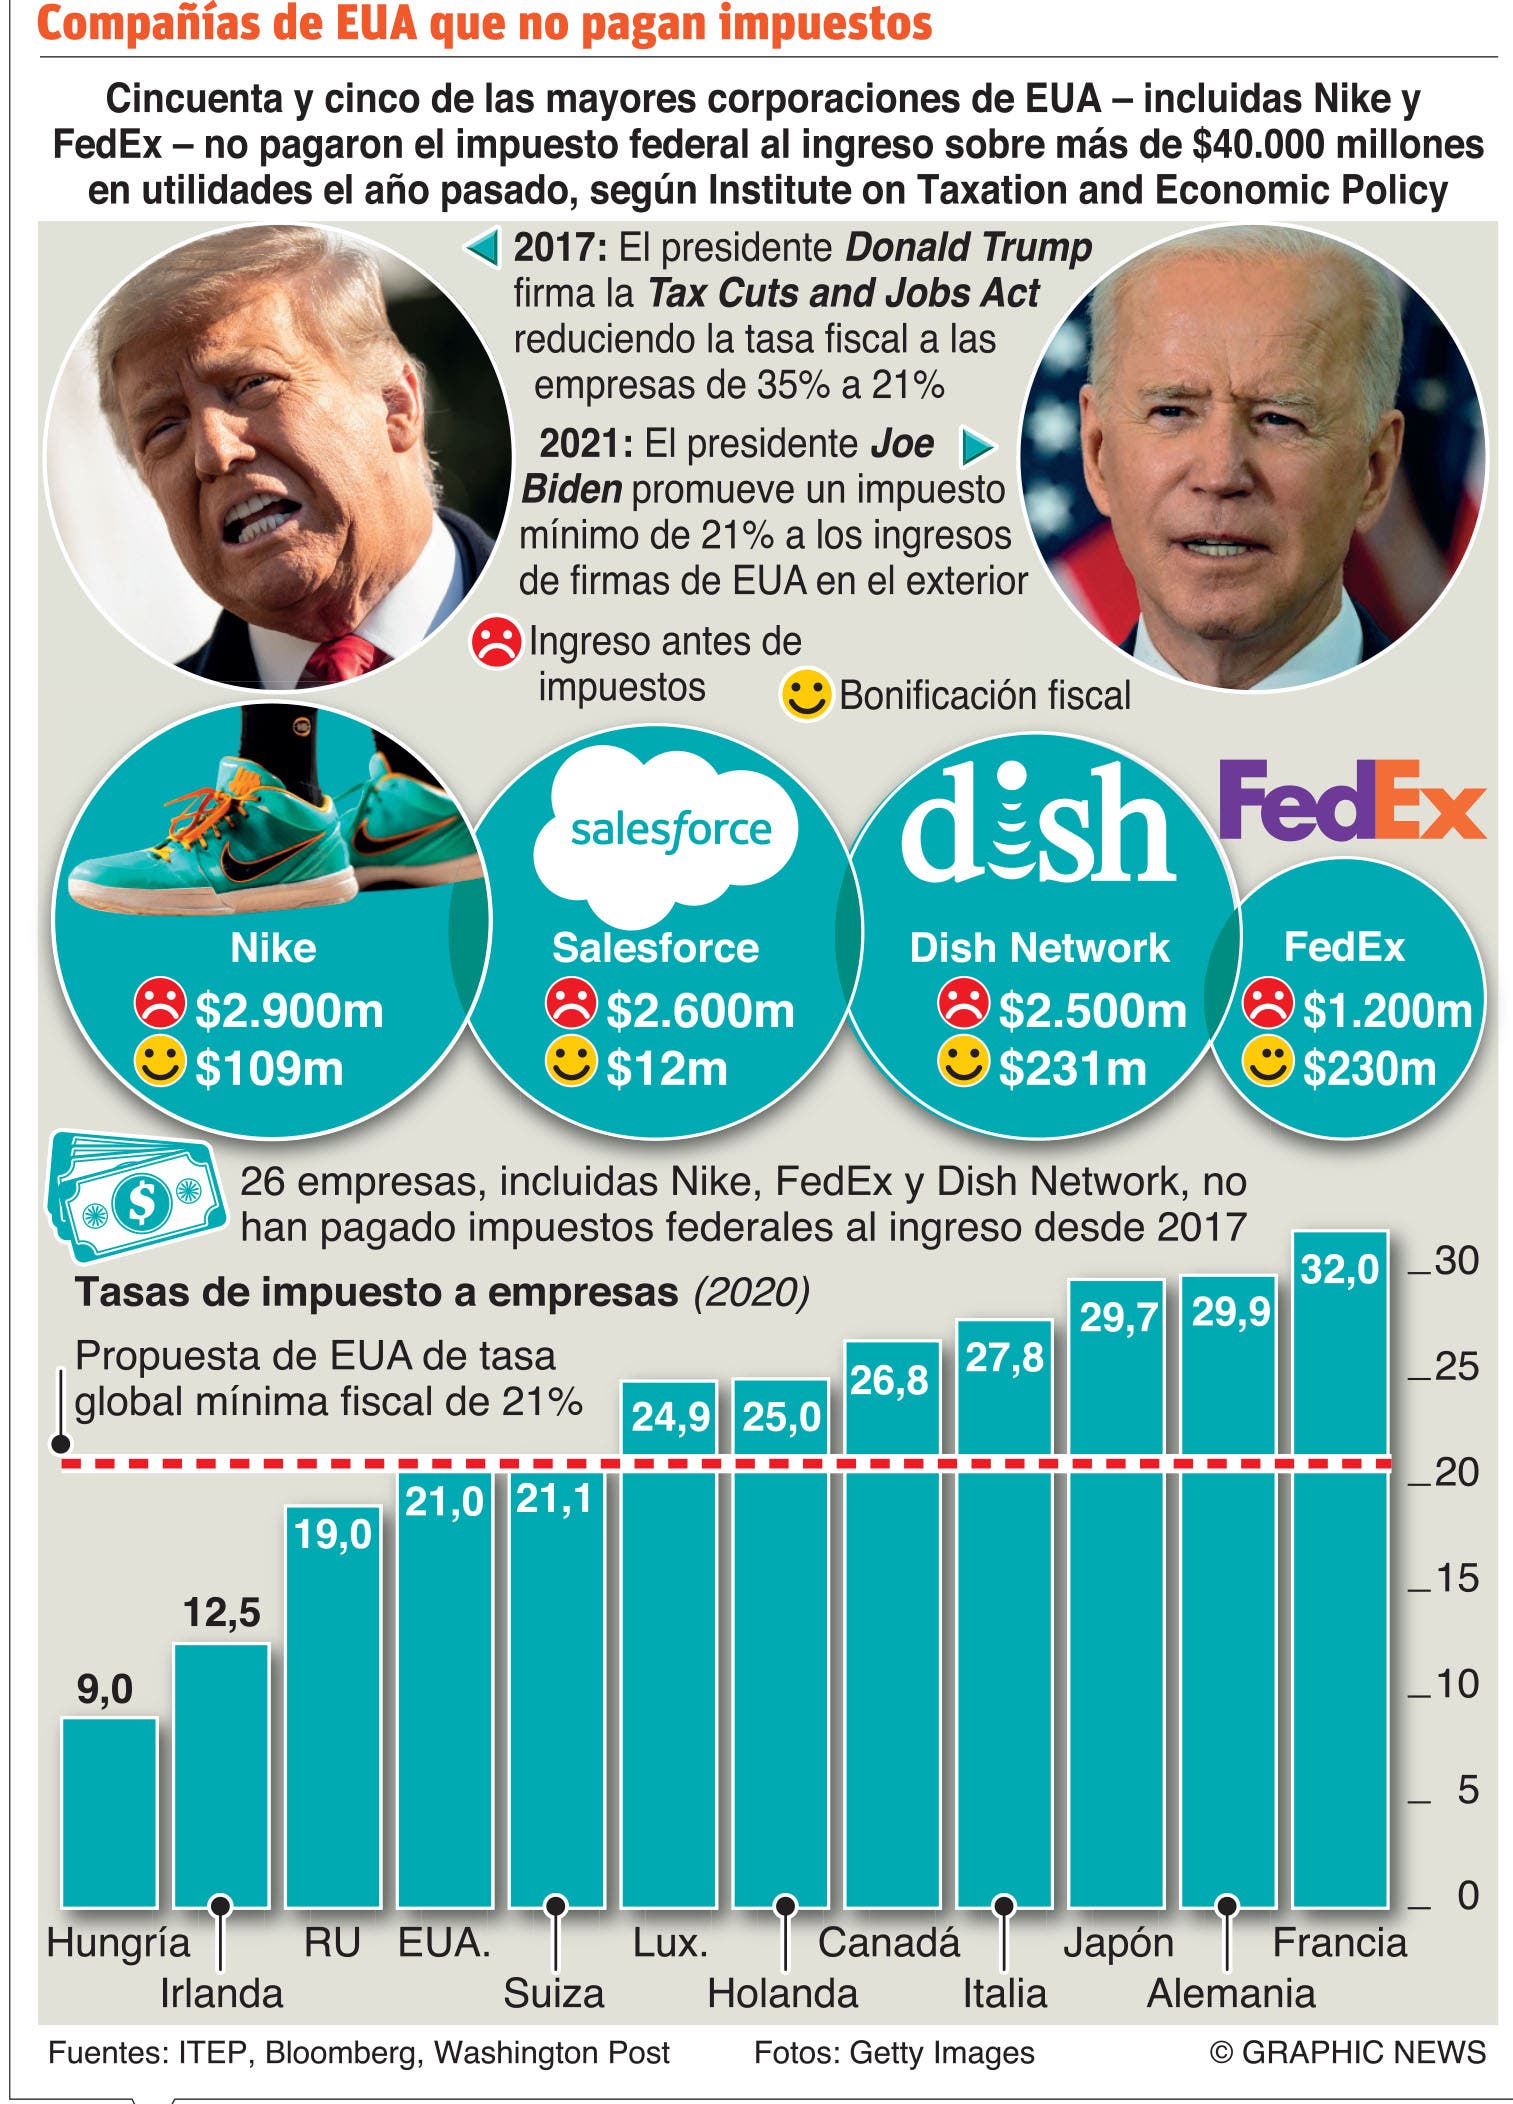 La cruzada de Joe Biden para subir impuestos a las grandes empresas